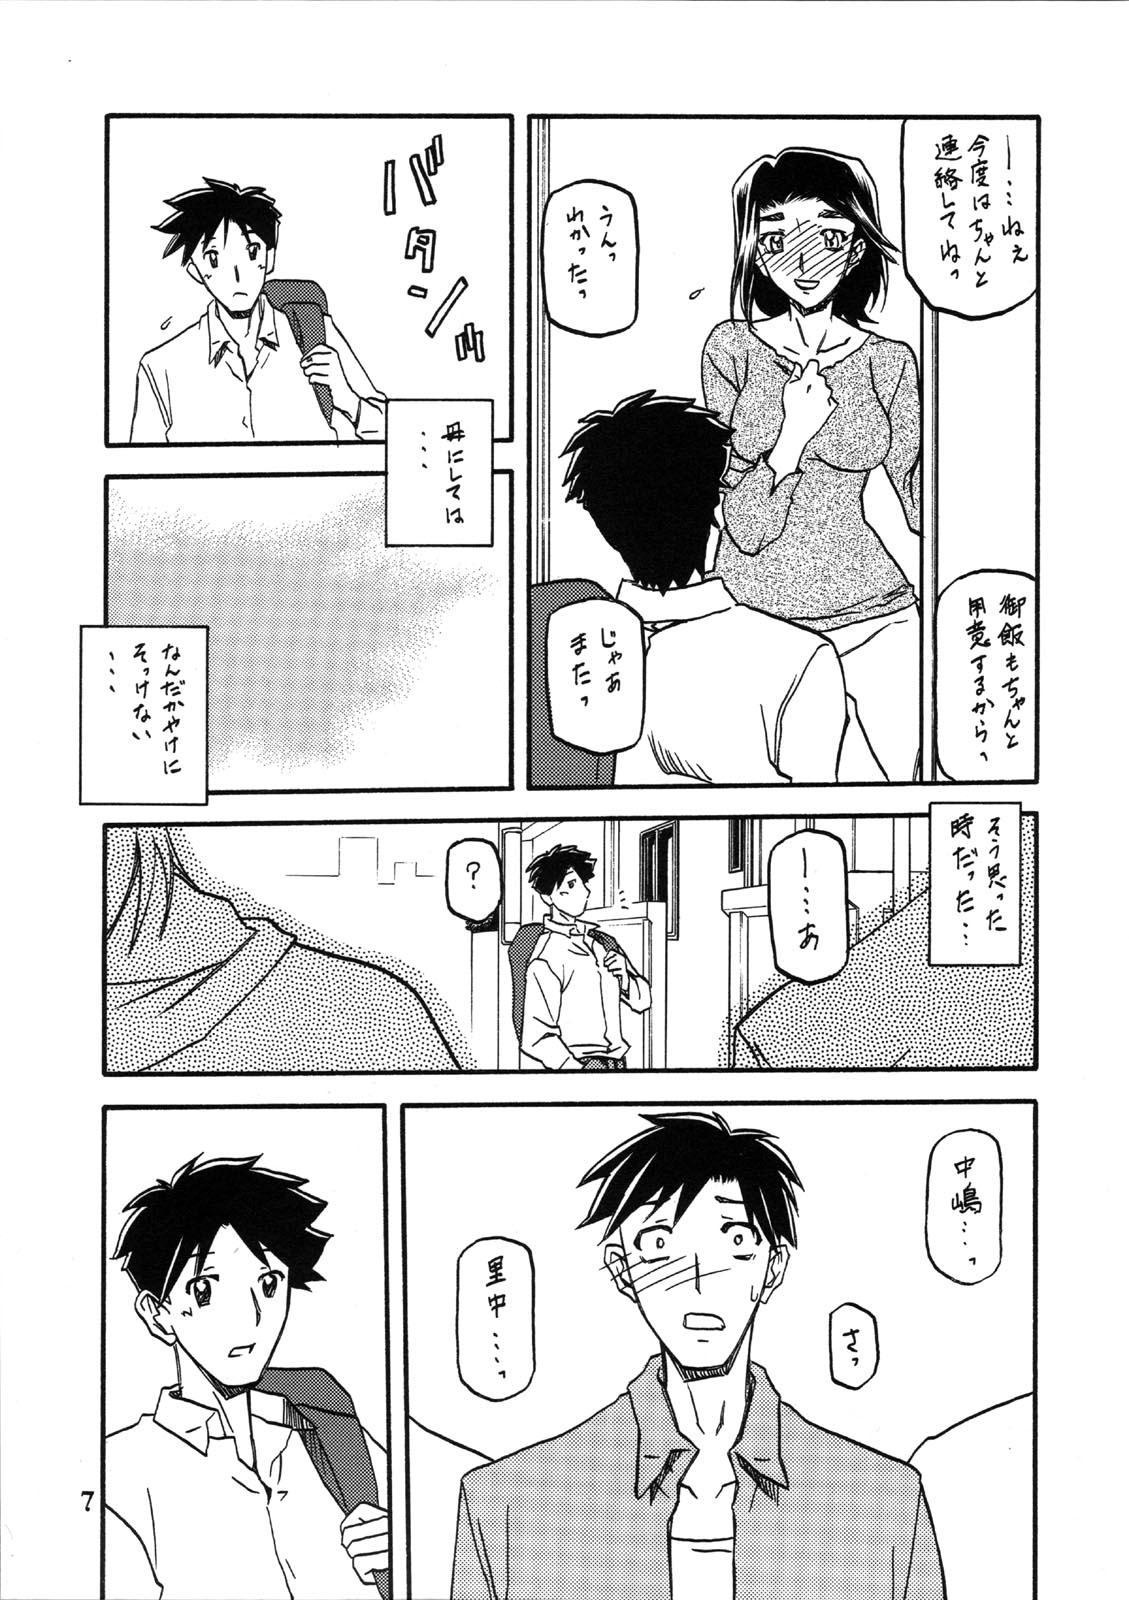 Comendo Akebi no Mi - Miwako - Akebi no mi Cum In Pussy - Page 7